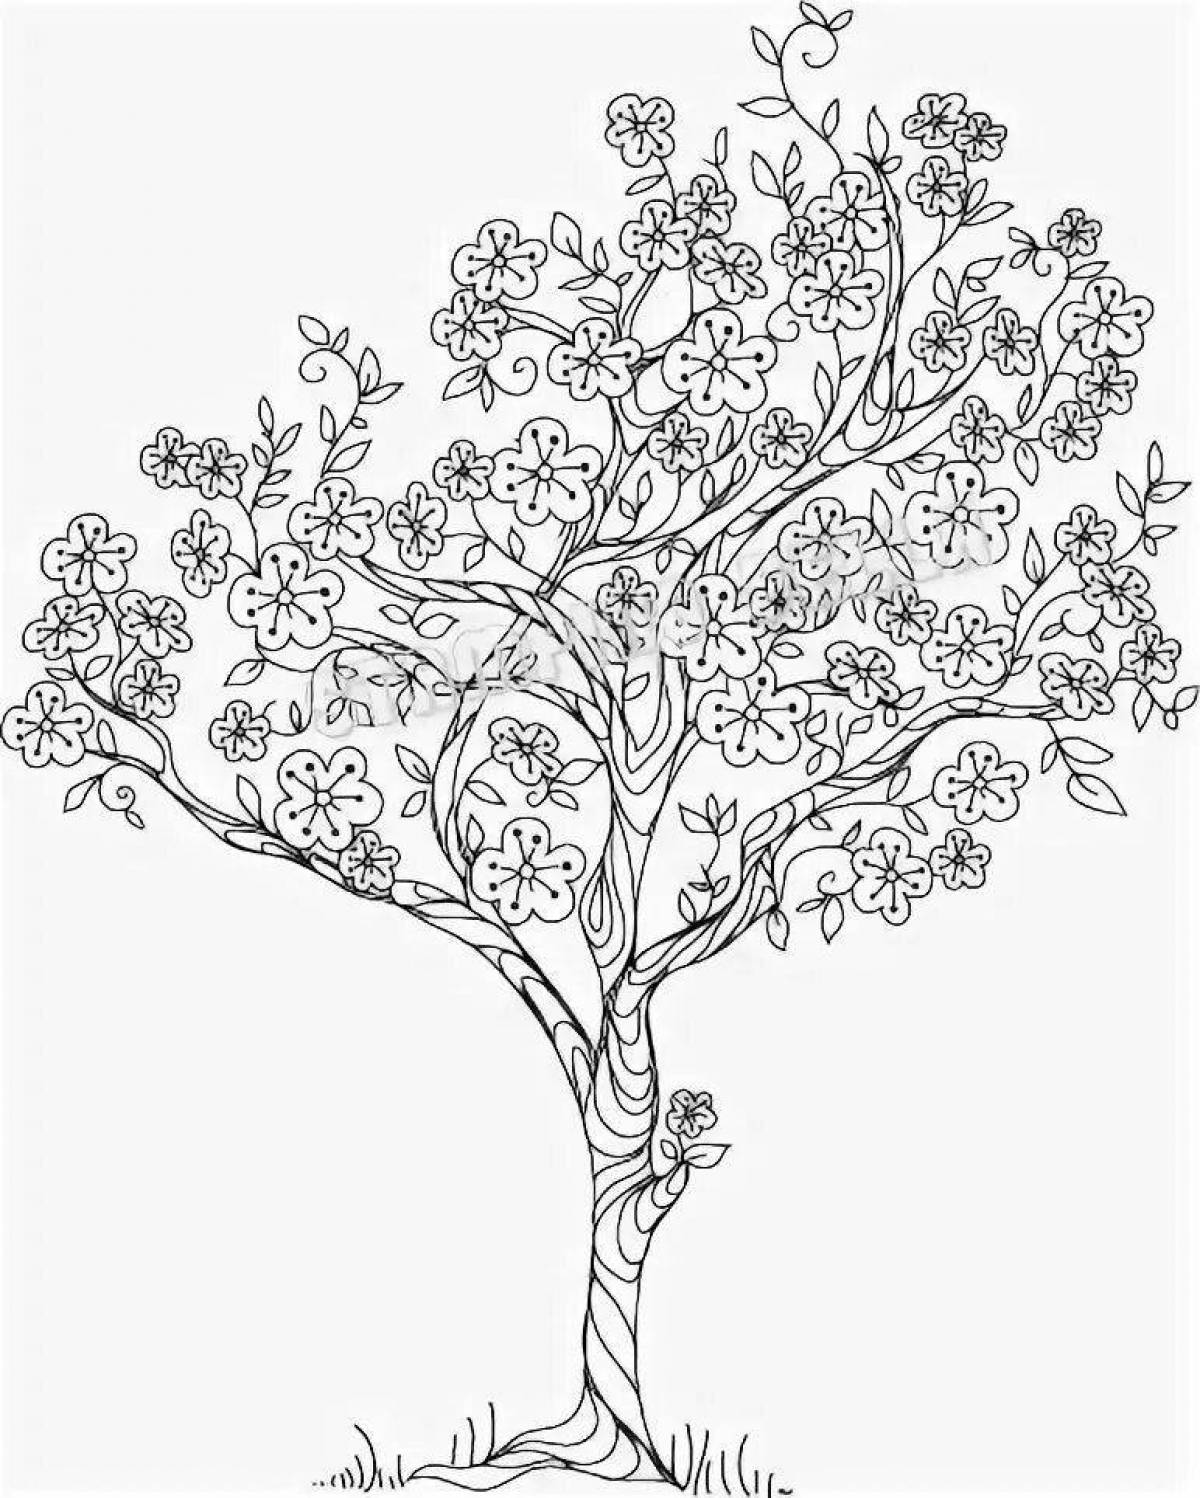 Раскраска радостное дерево сакуры